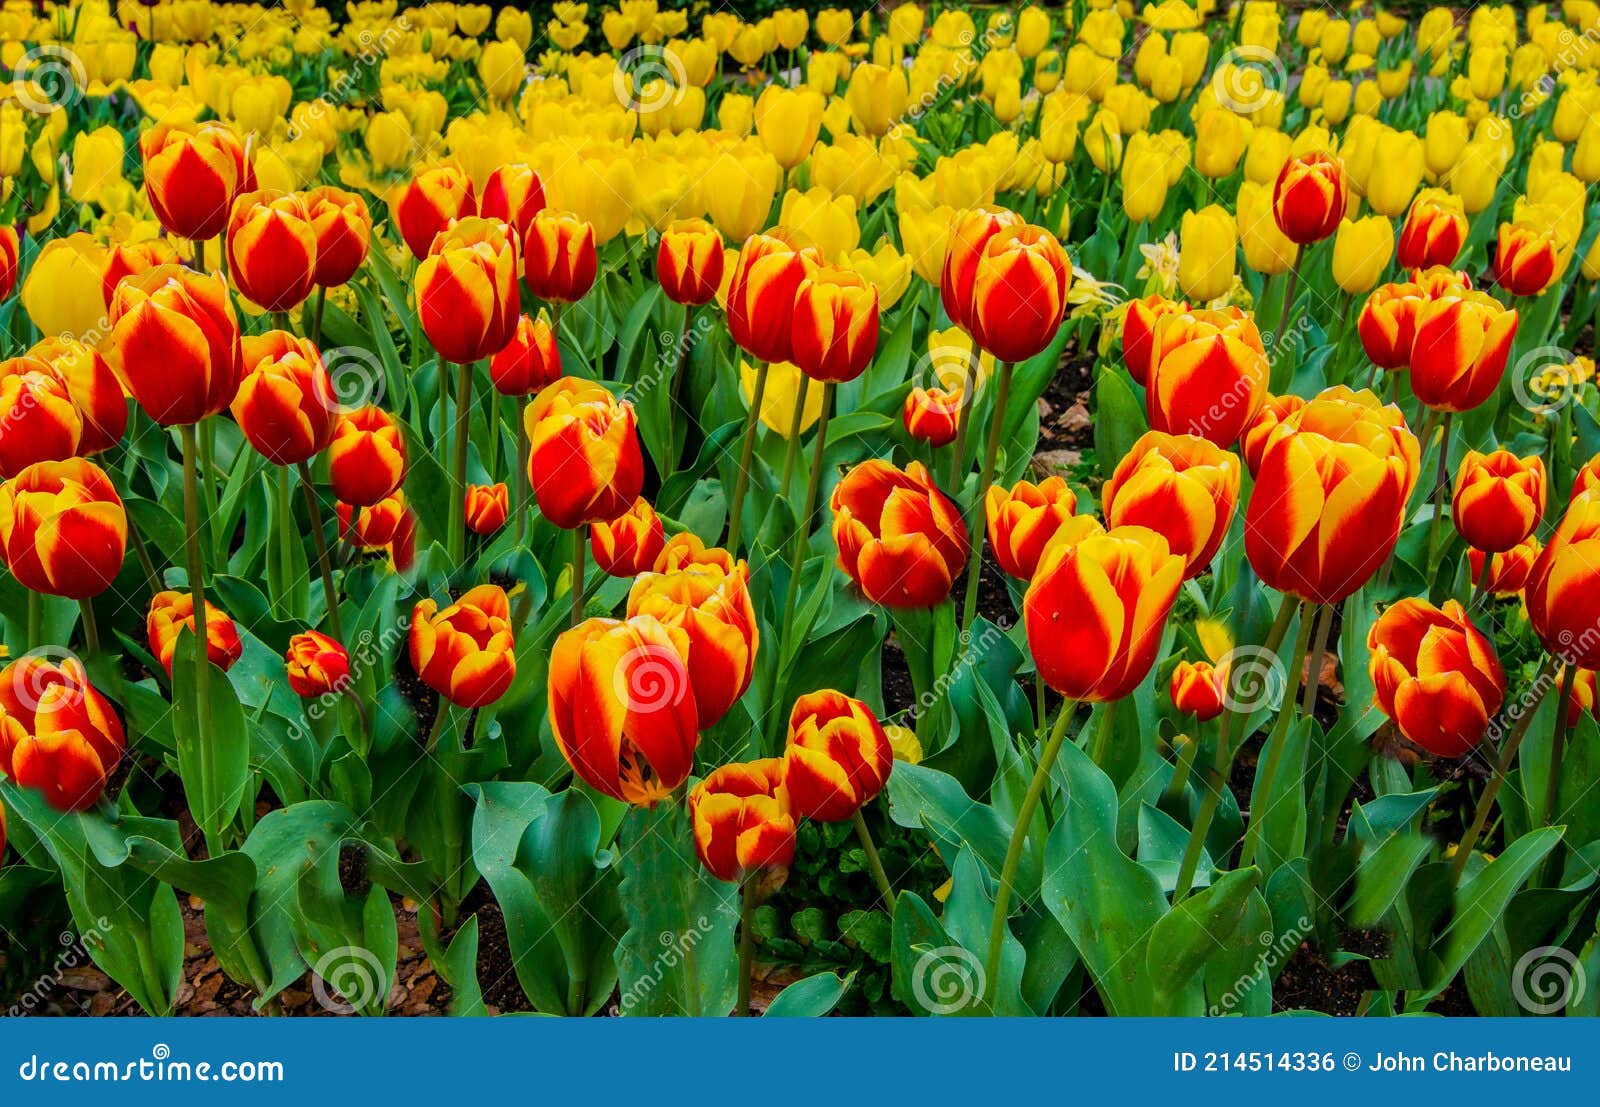 Ressorts Les Plus Belles Tulipes En Pleine Floraison. Photo stock - Image  du élément, fleurs: 214514336